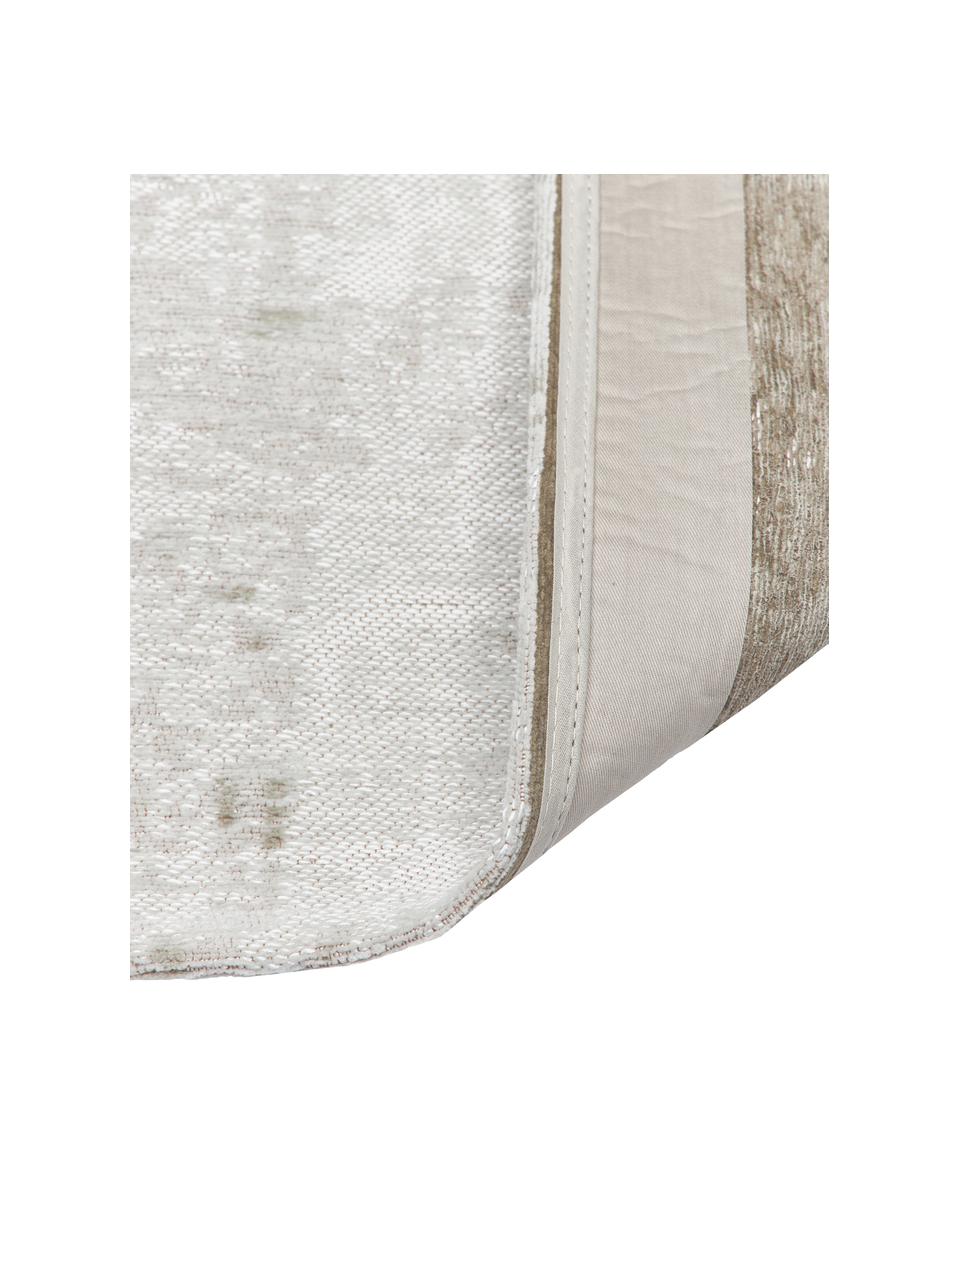 Tappeto in cotone piatto argentato/grigio/beige Louisa, Retro: lattice, Tonalità grigie, argentato, Larg. 80 x Lung. 150 cm (taglia XS)